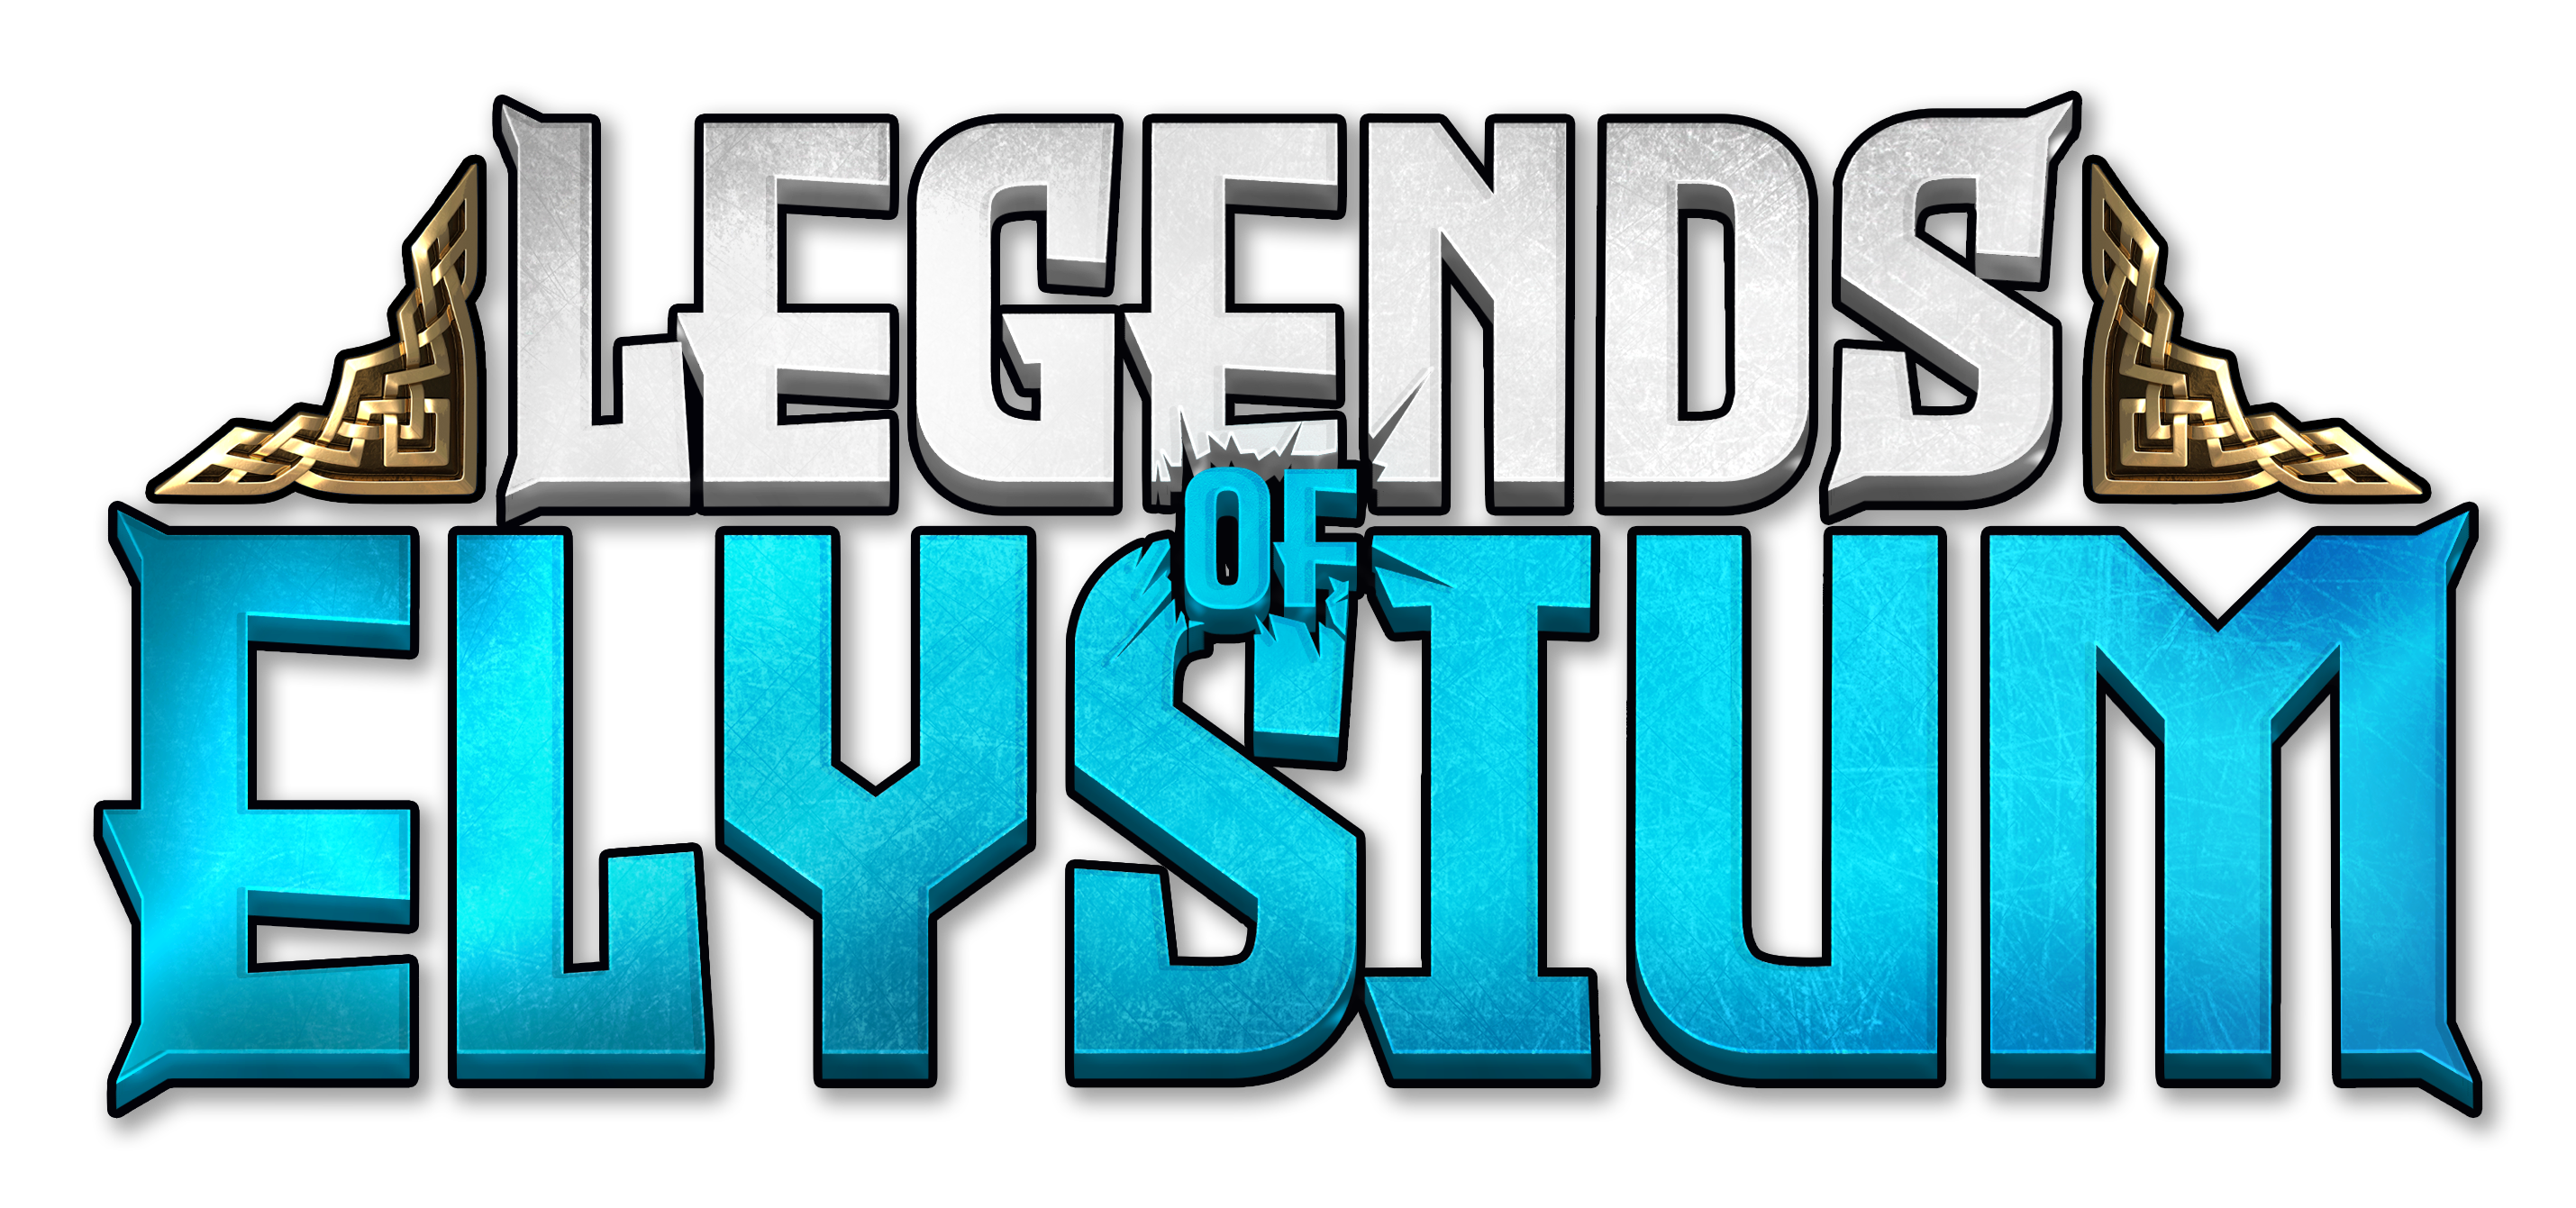 Legends of Elysium